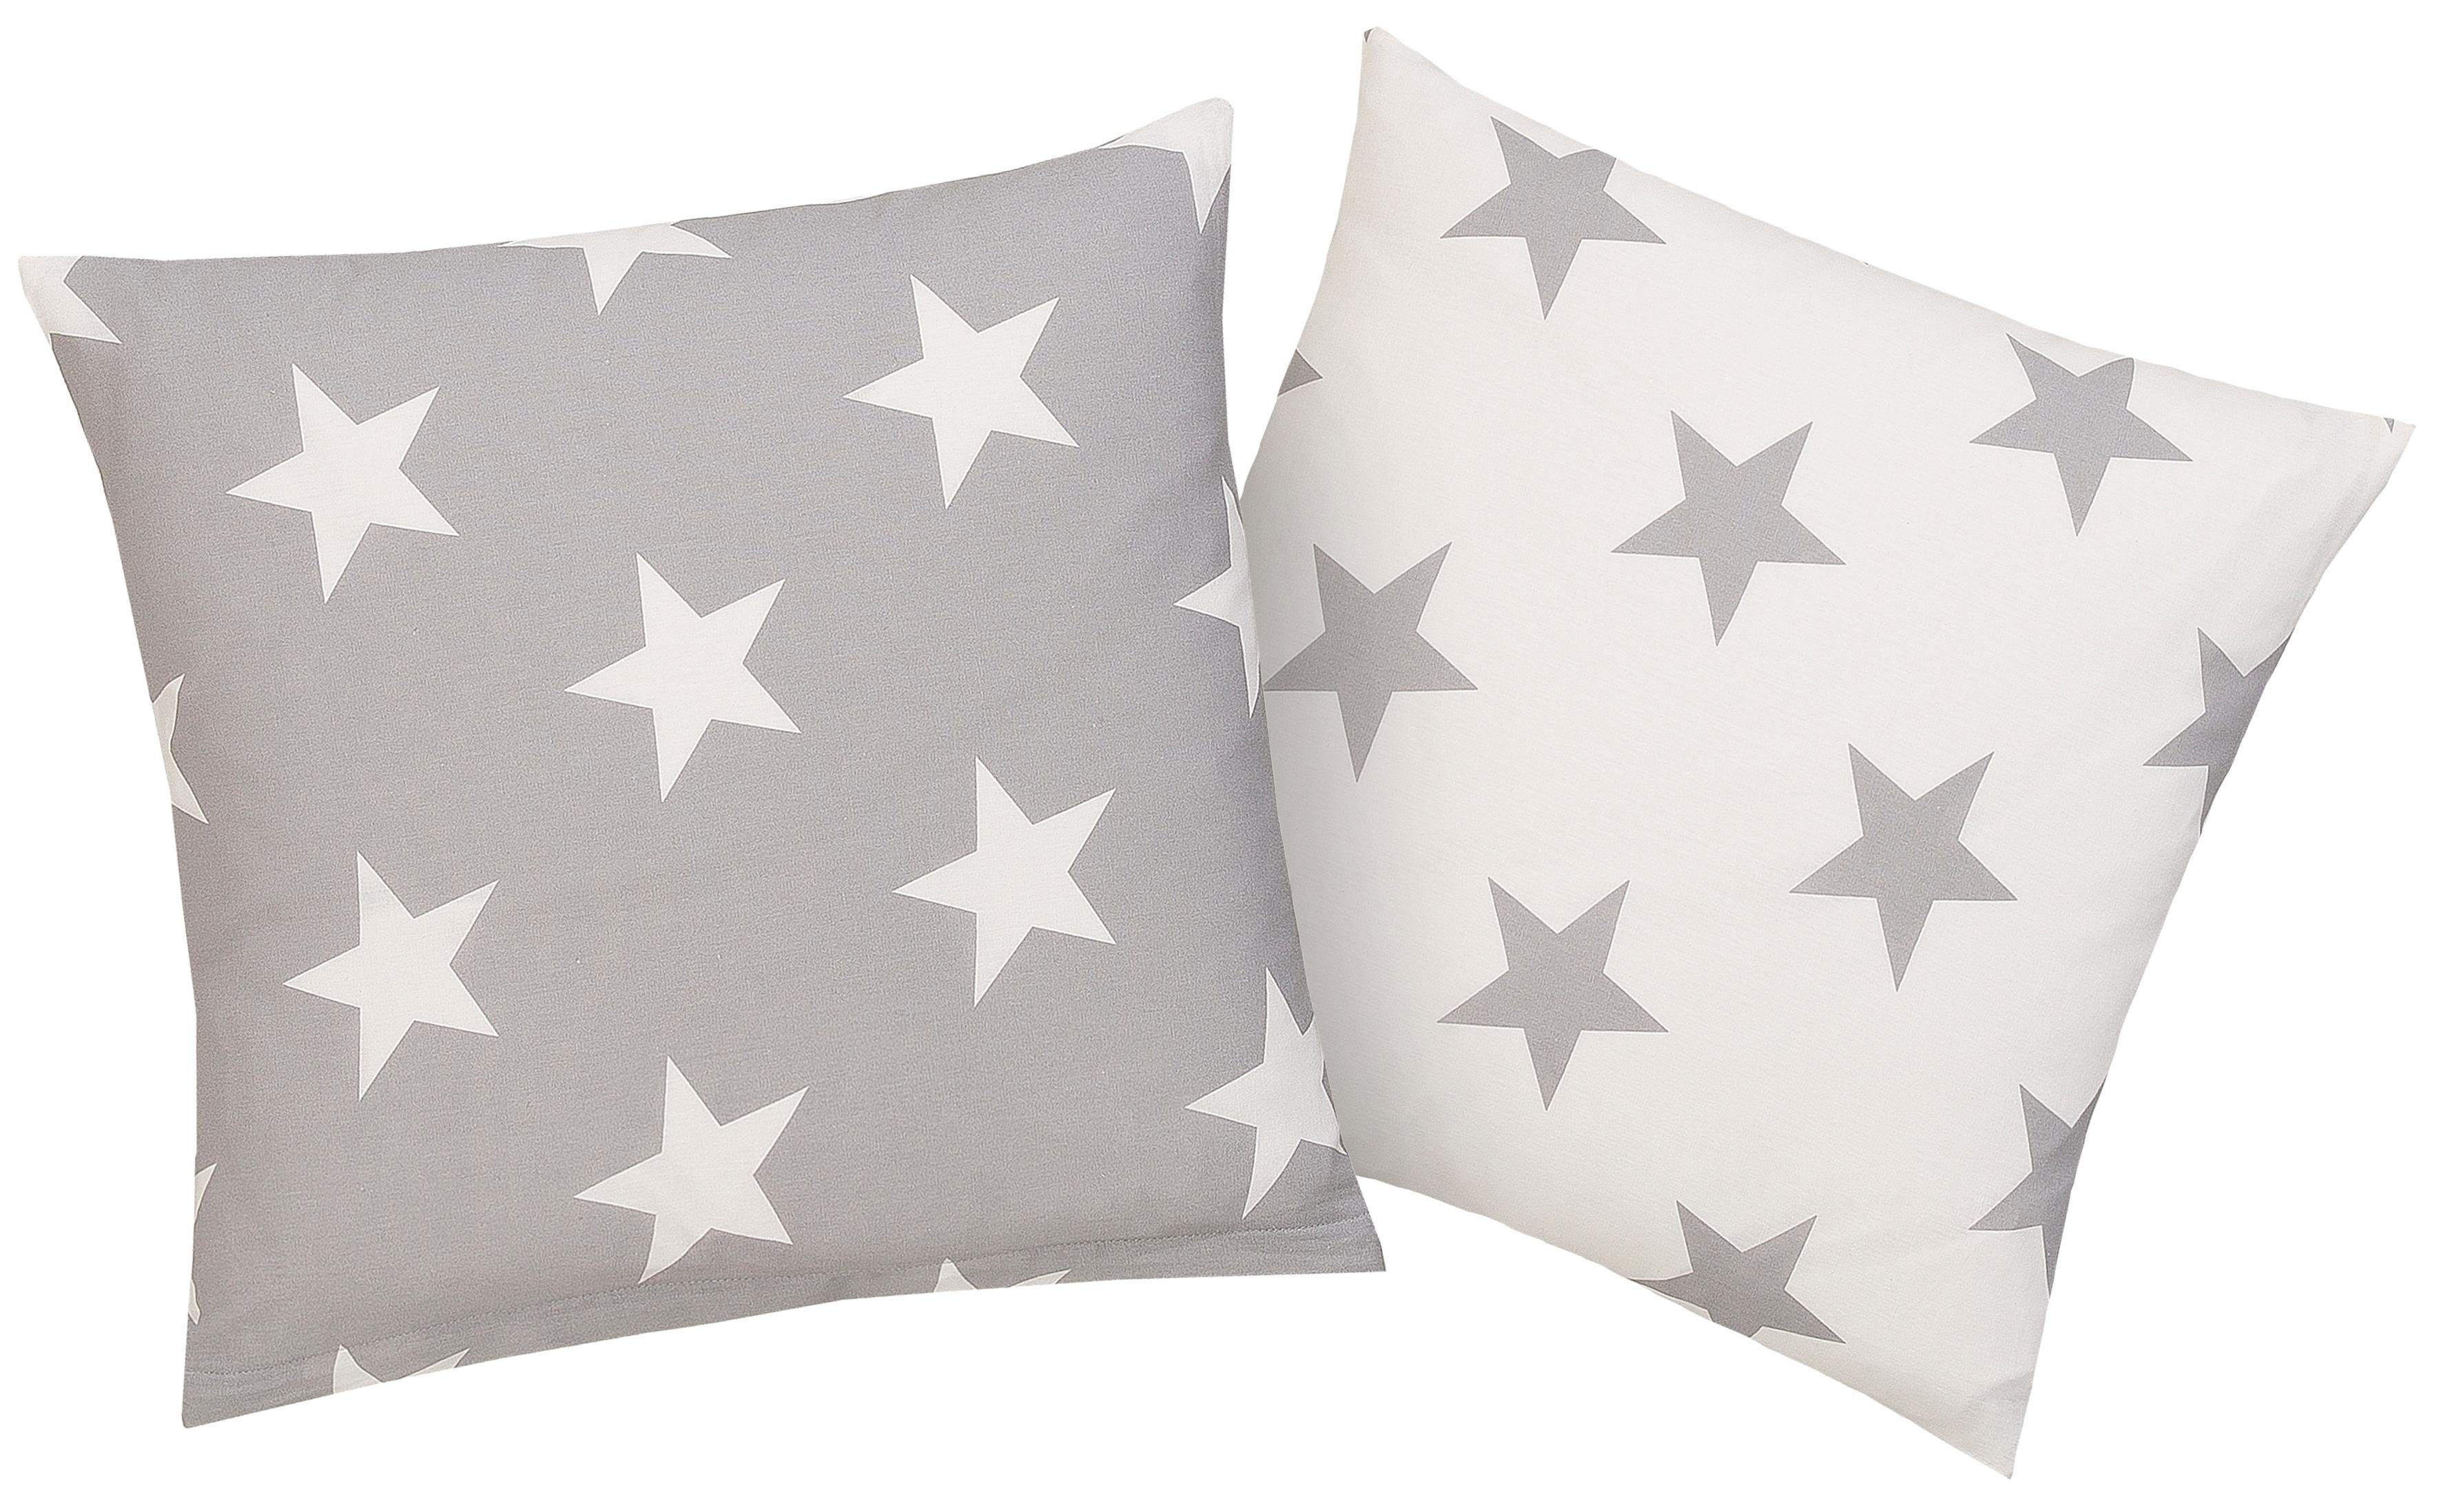 Kissenbezüge Stella Kissenhülle mit Sternenmuster, in verschiedenen Größen, my home (2 Stück) grau/wollweiß